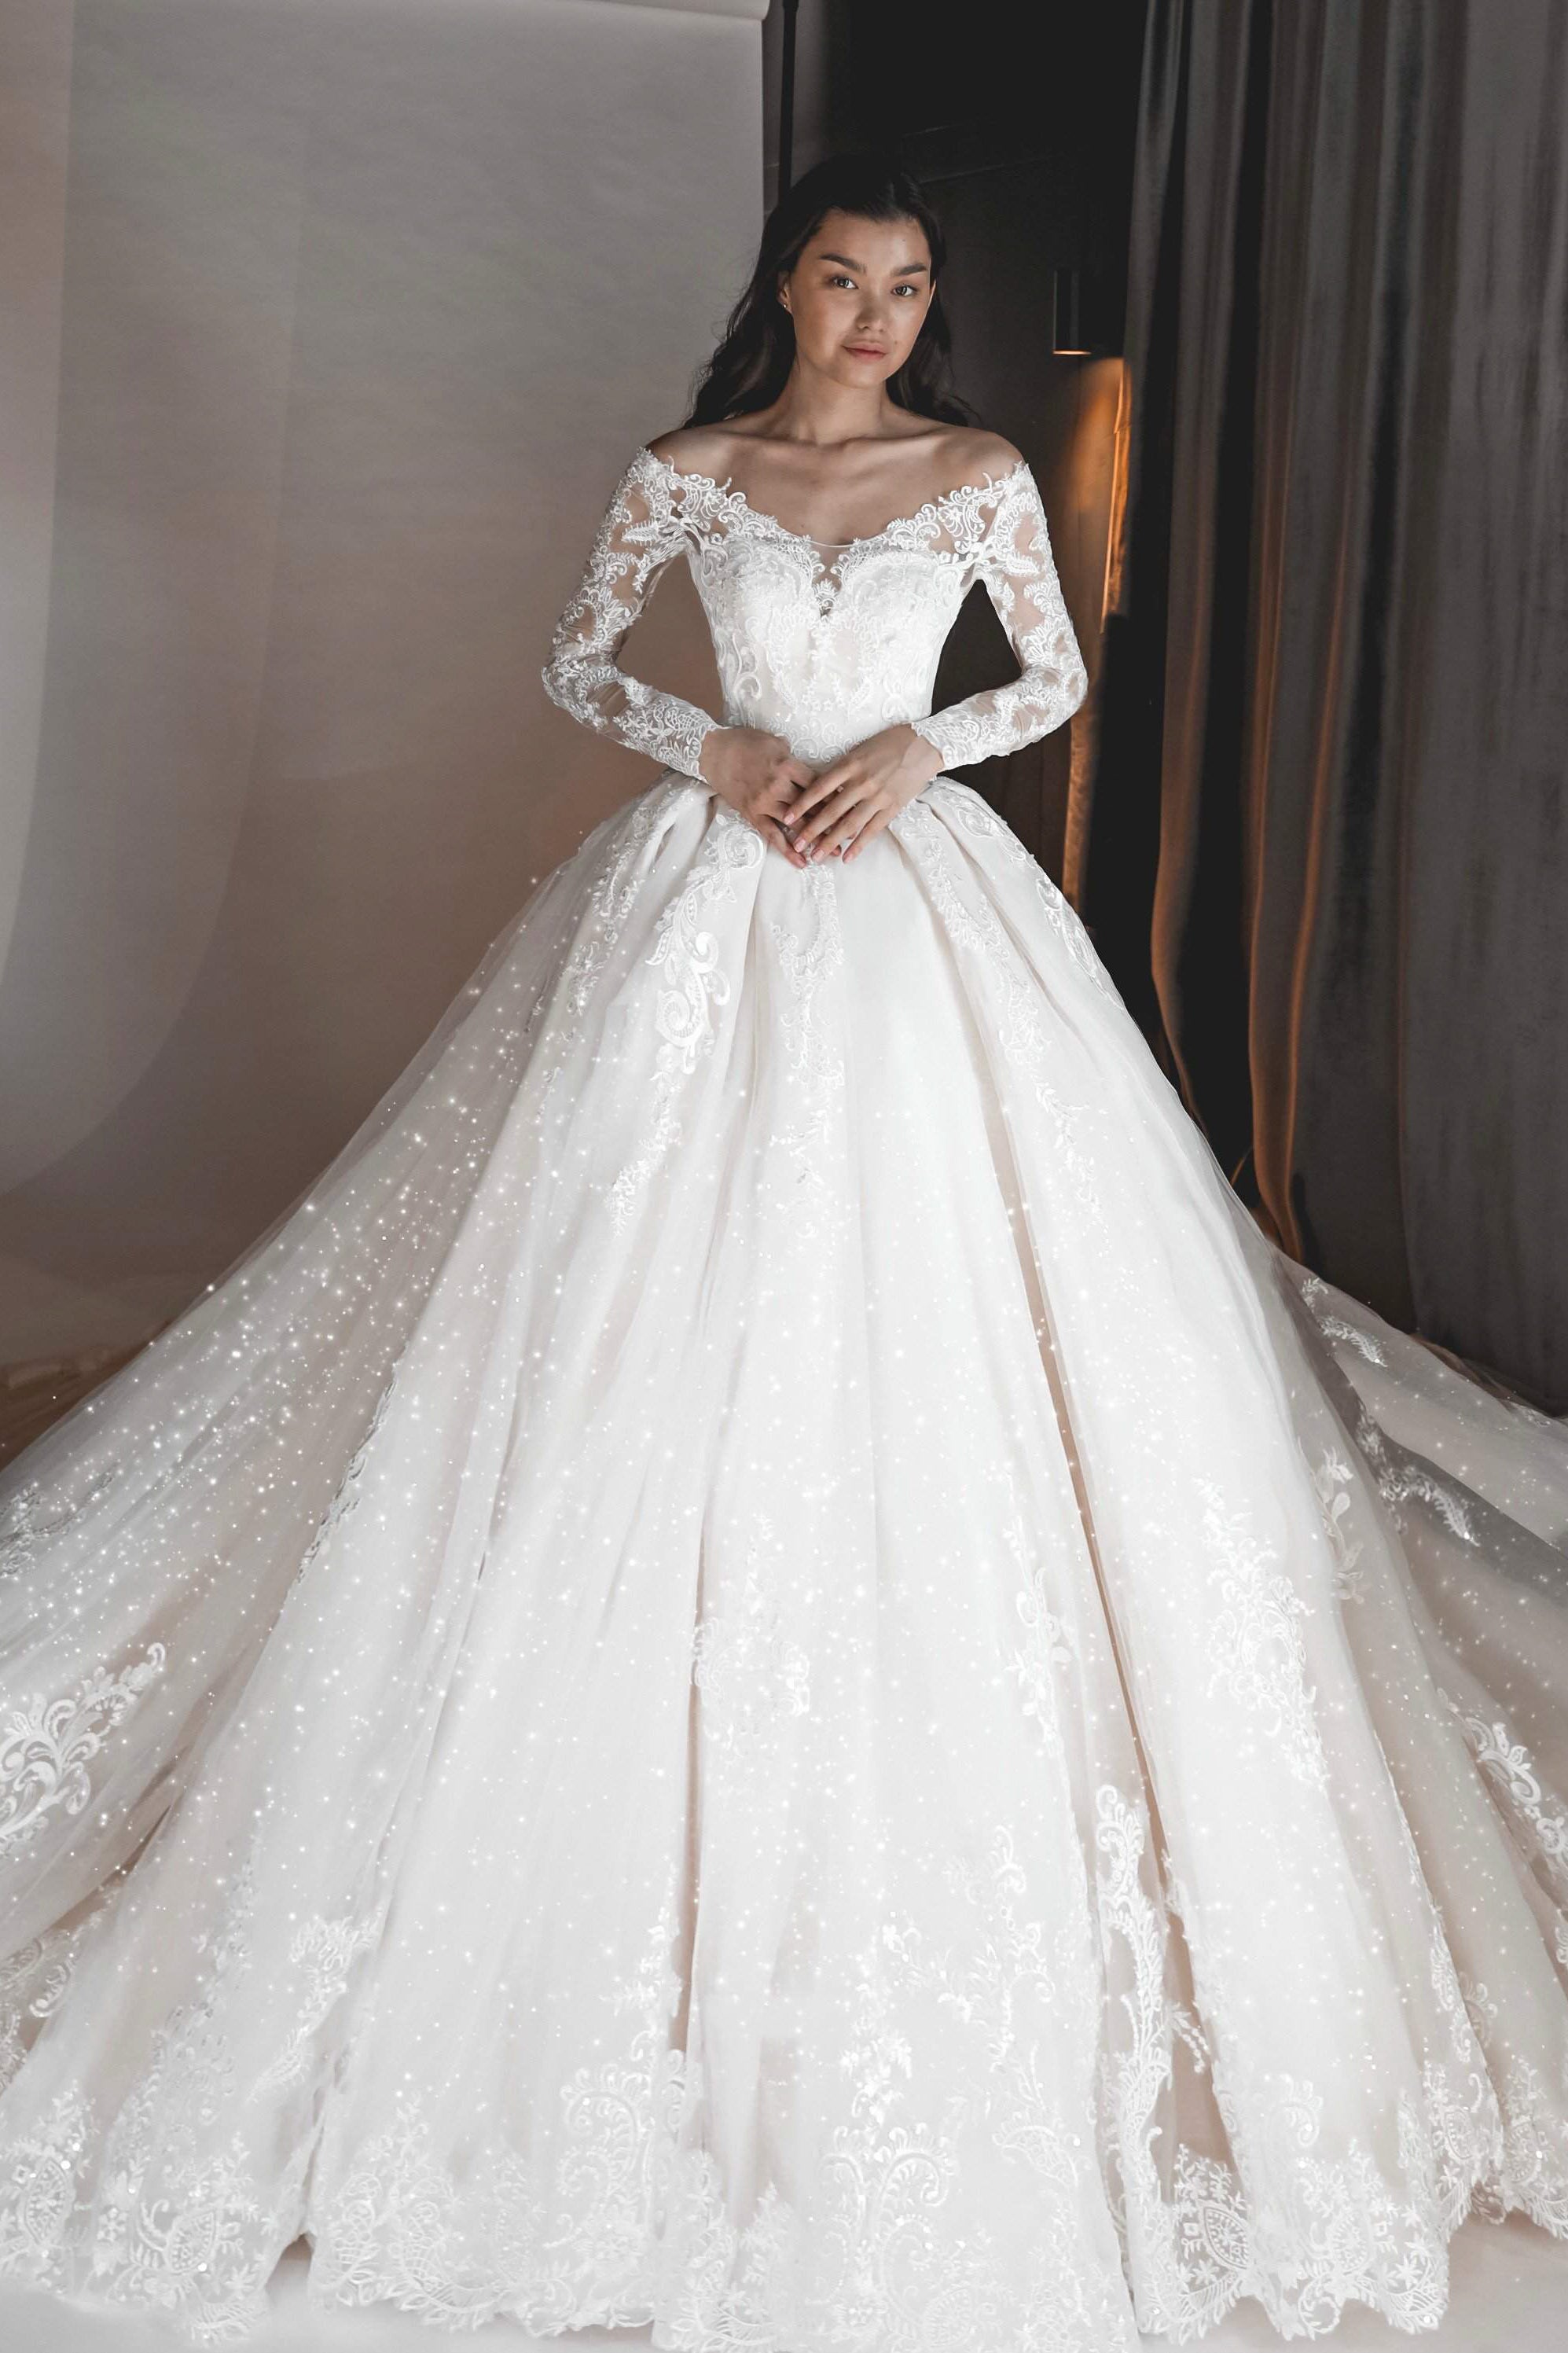 Dream wedding dress ✨🌿 #weddingdress #bridetobe #gown #altfashion | TikTok